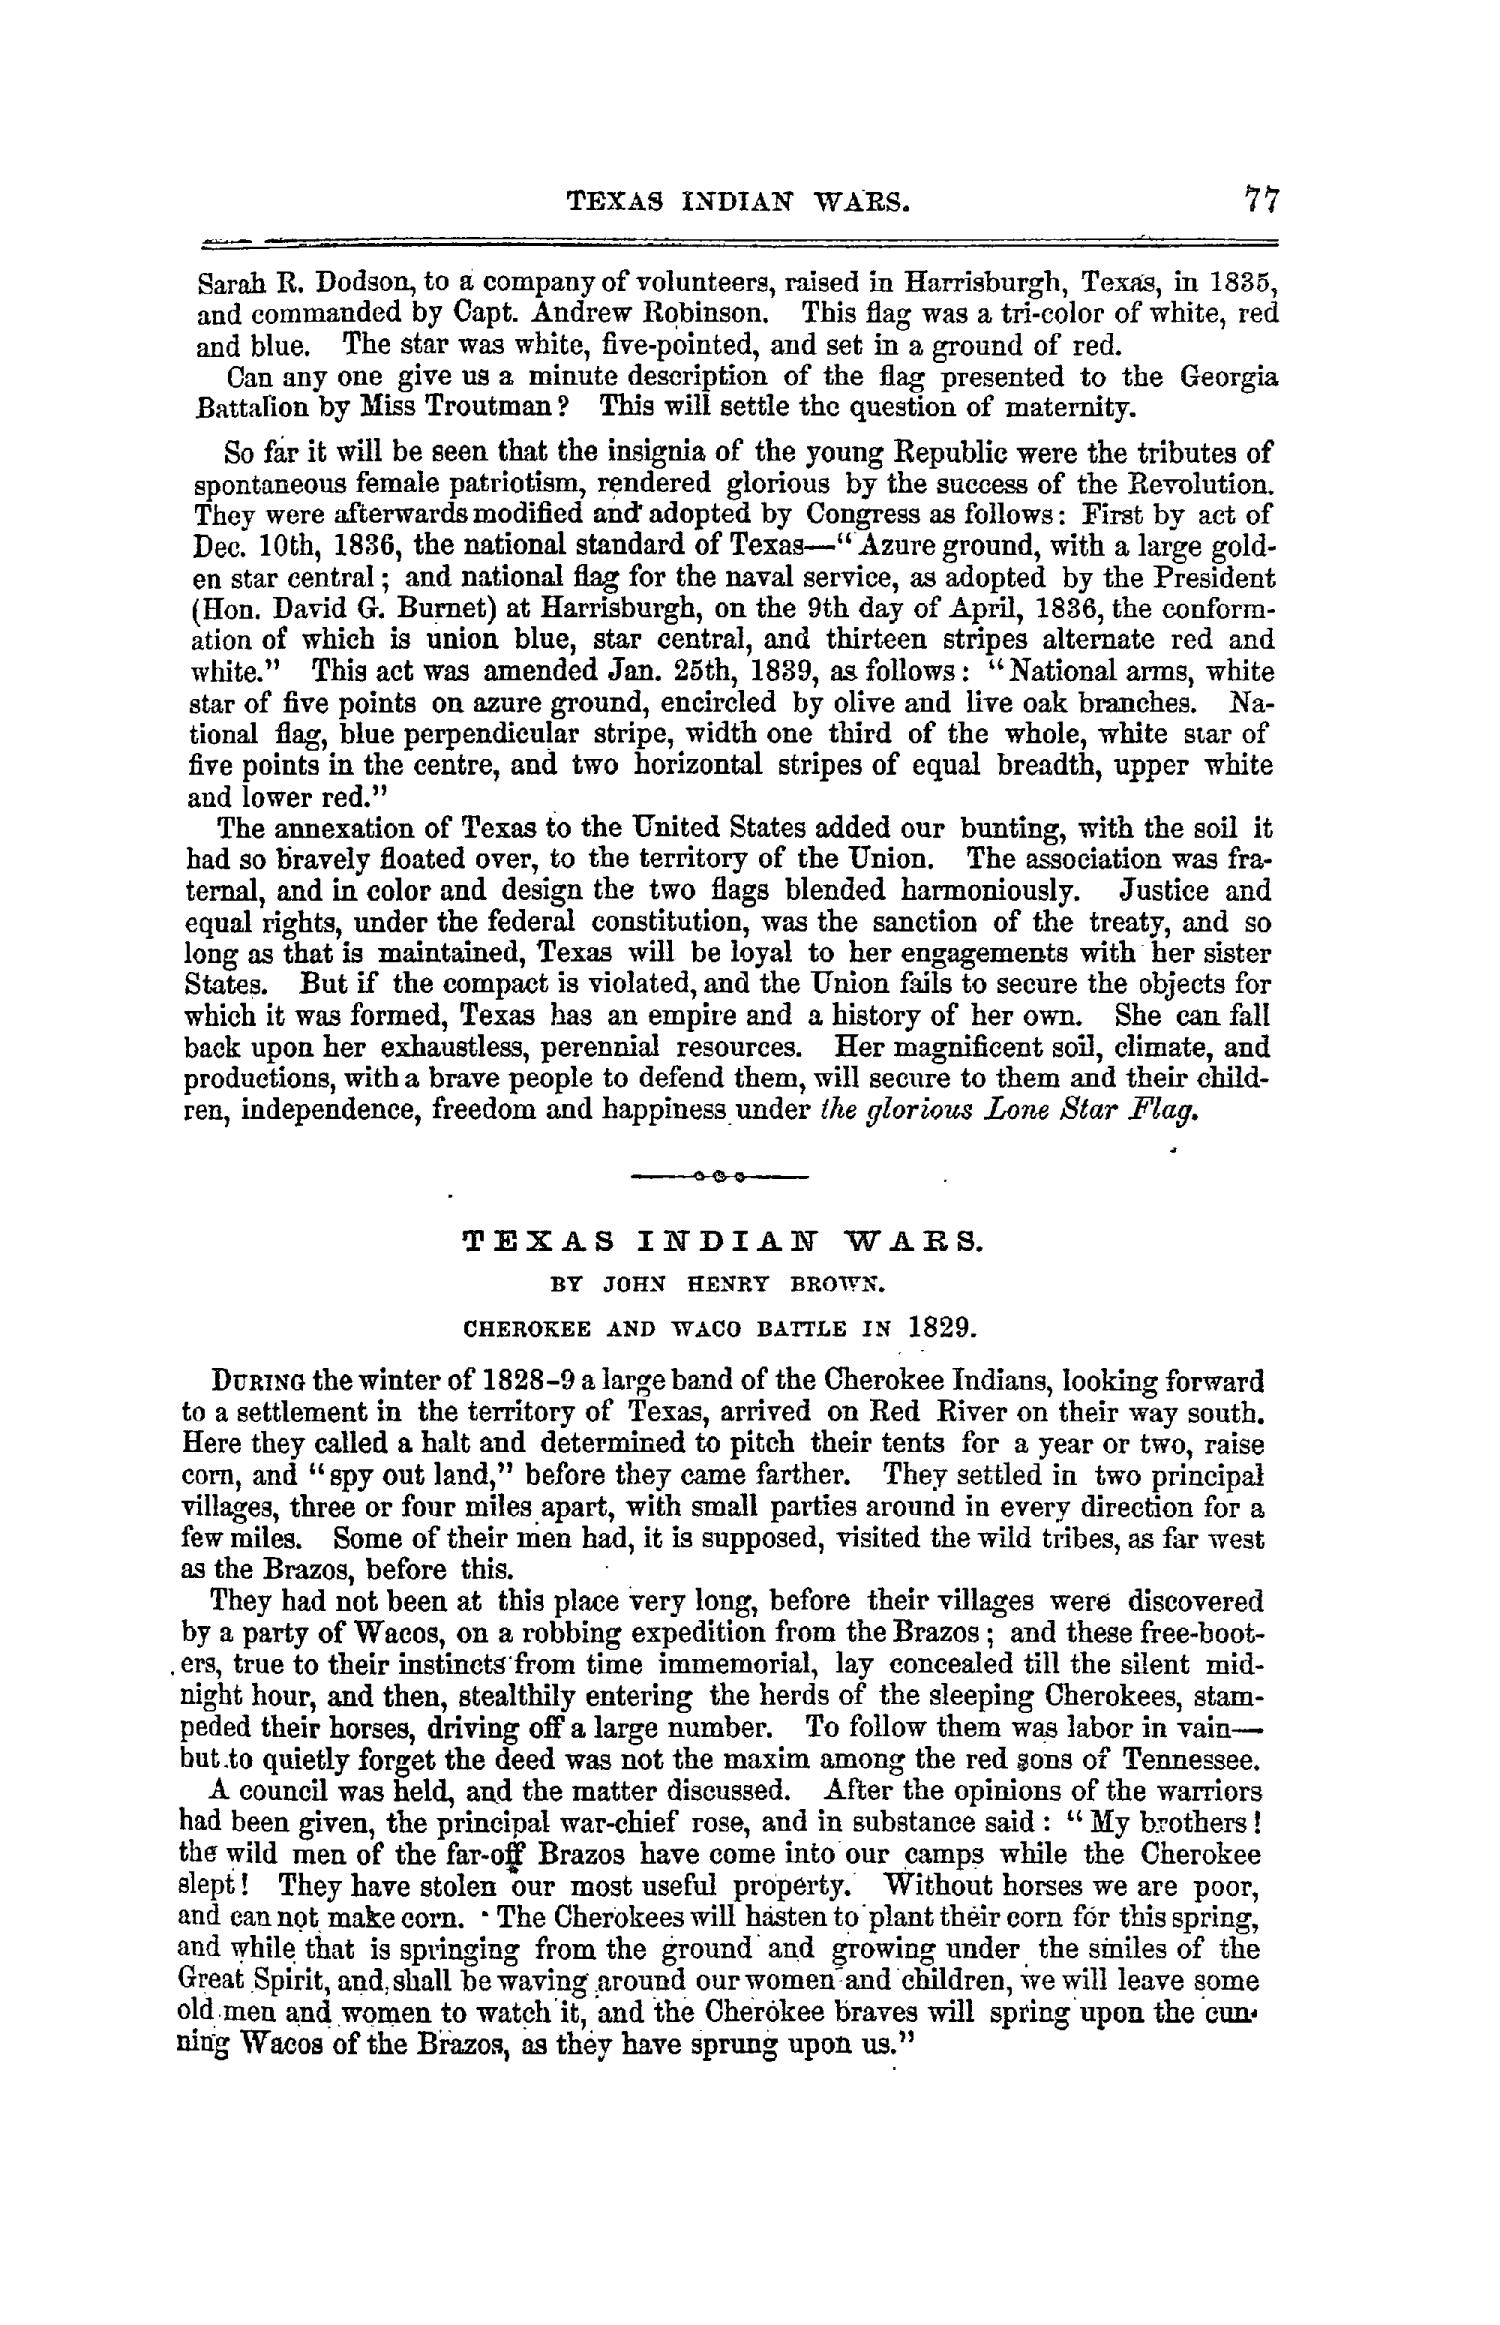 The Texas Almanac for 1861
                                                
                                                    77
                                                